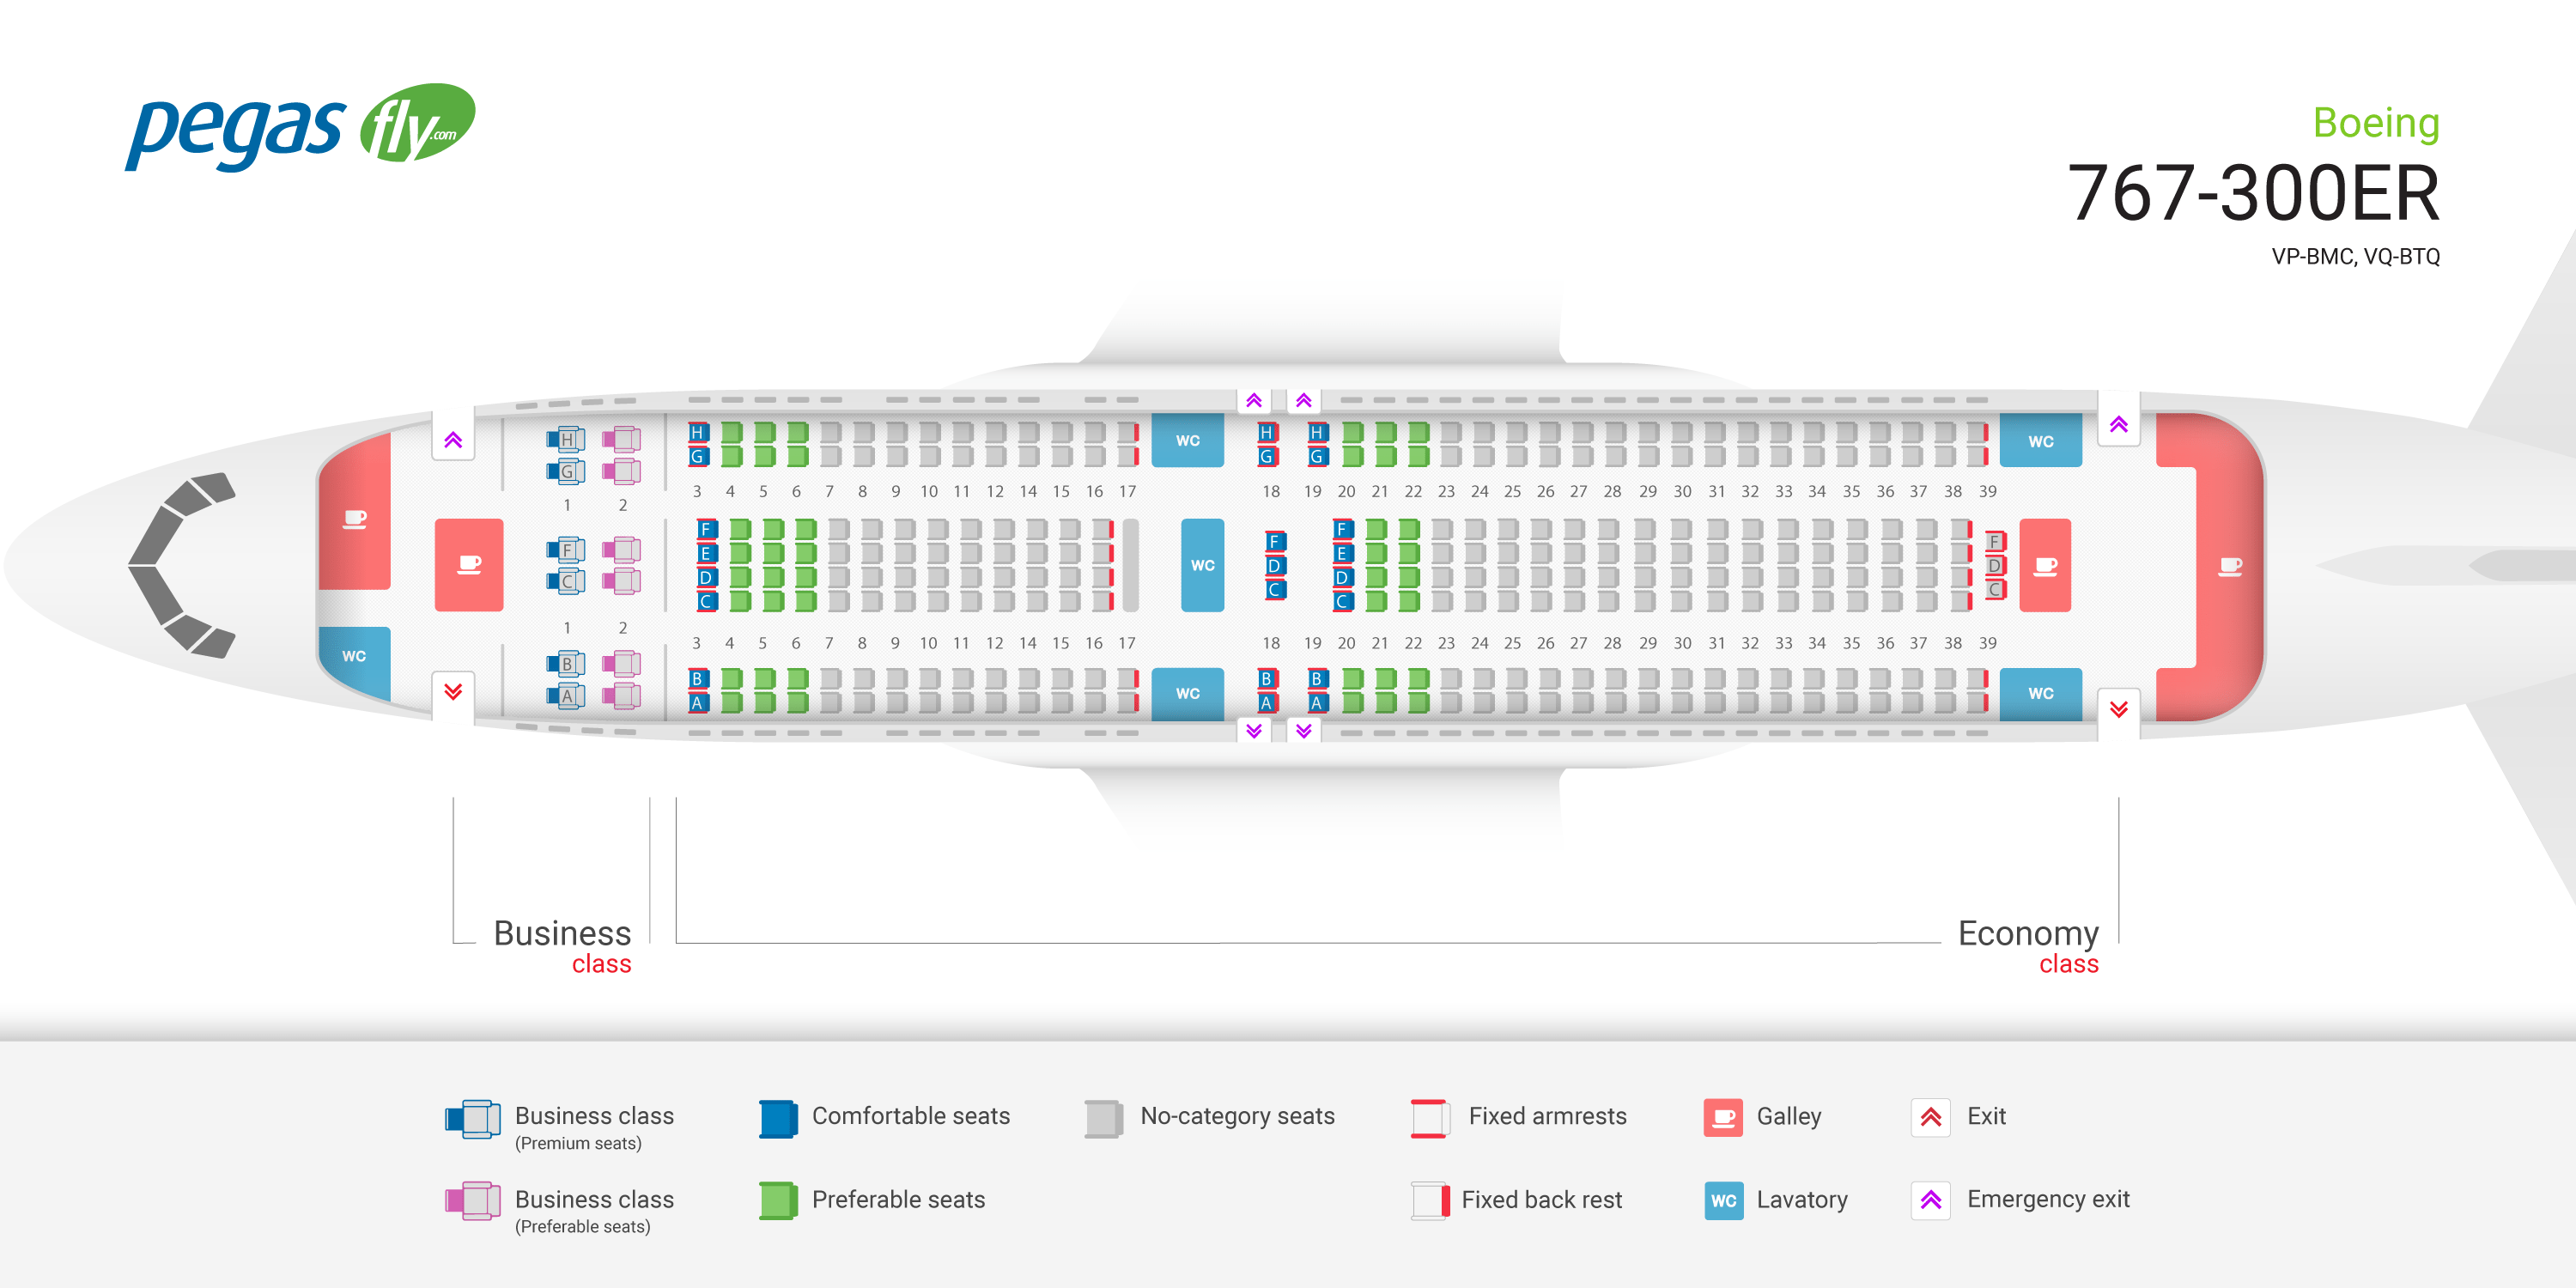 Лучшие места boeing 767-300 азур эйр: перелет с комфортом | авиакомпании и авиалинии россии и мира